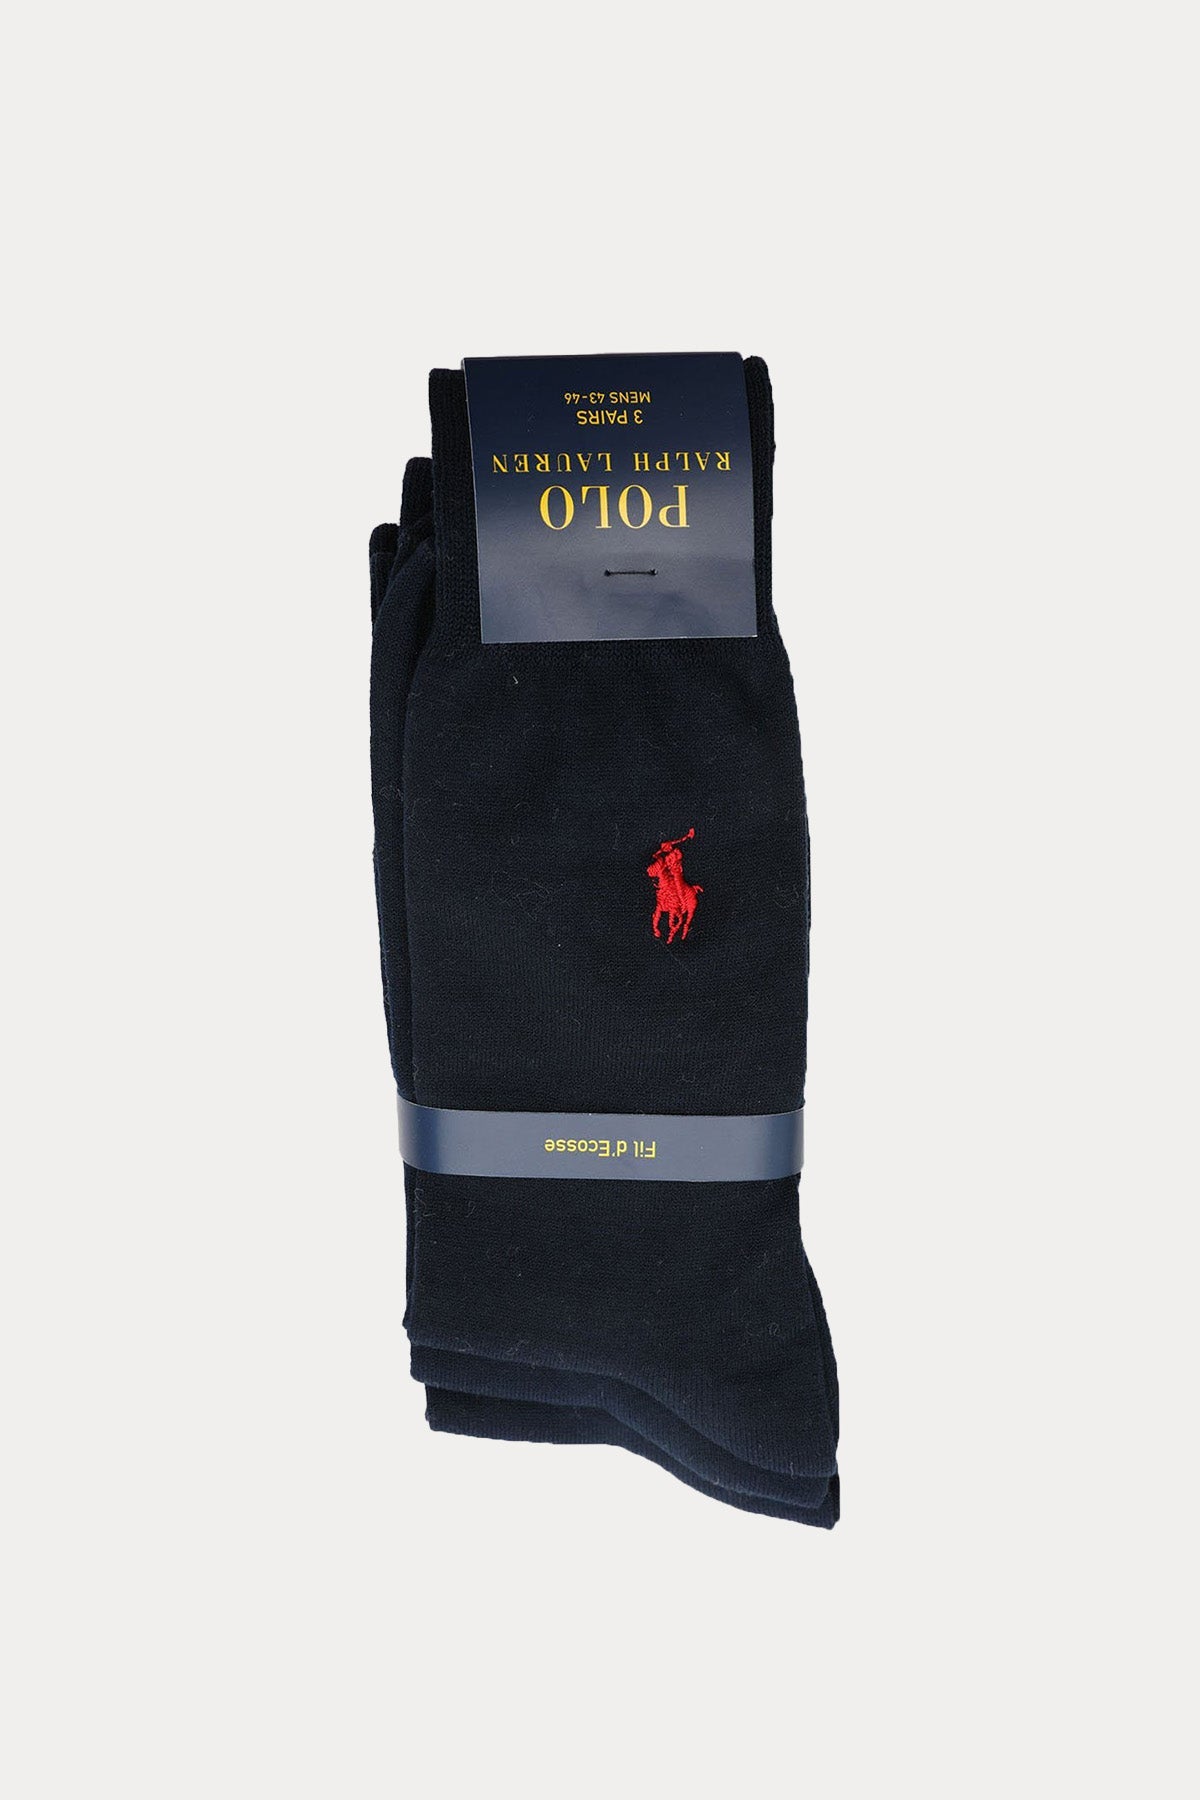 Polo Ralph Lauren İskoç İpliği 3'lü Paket Çorap